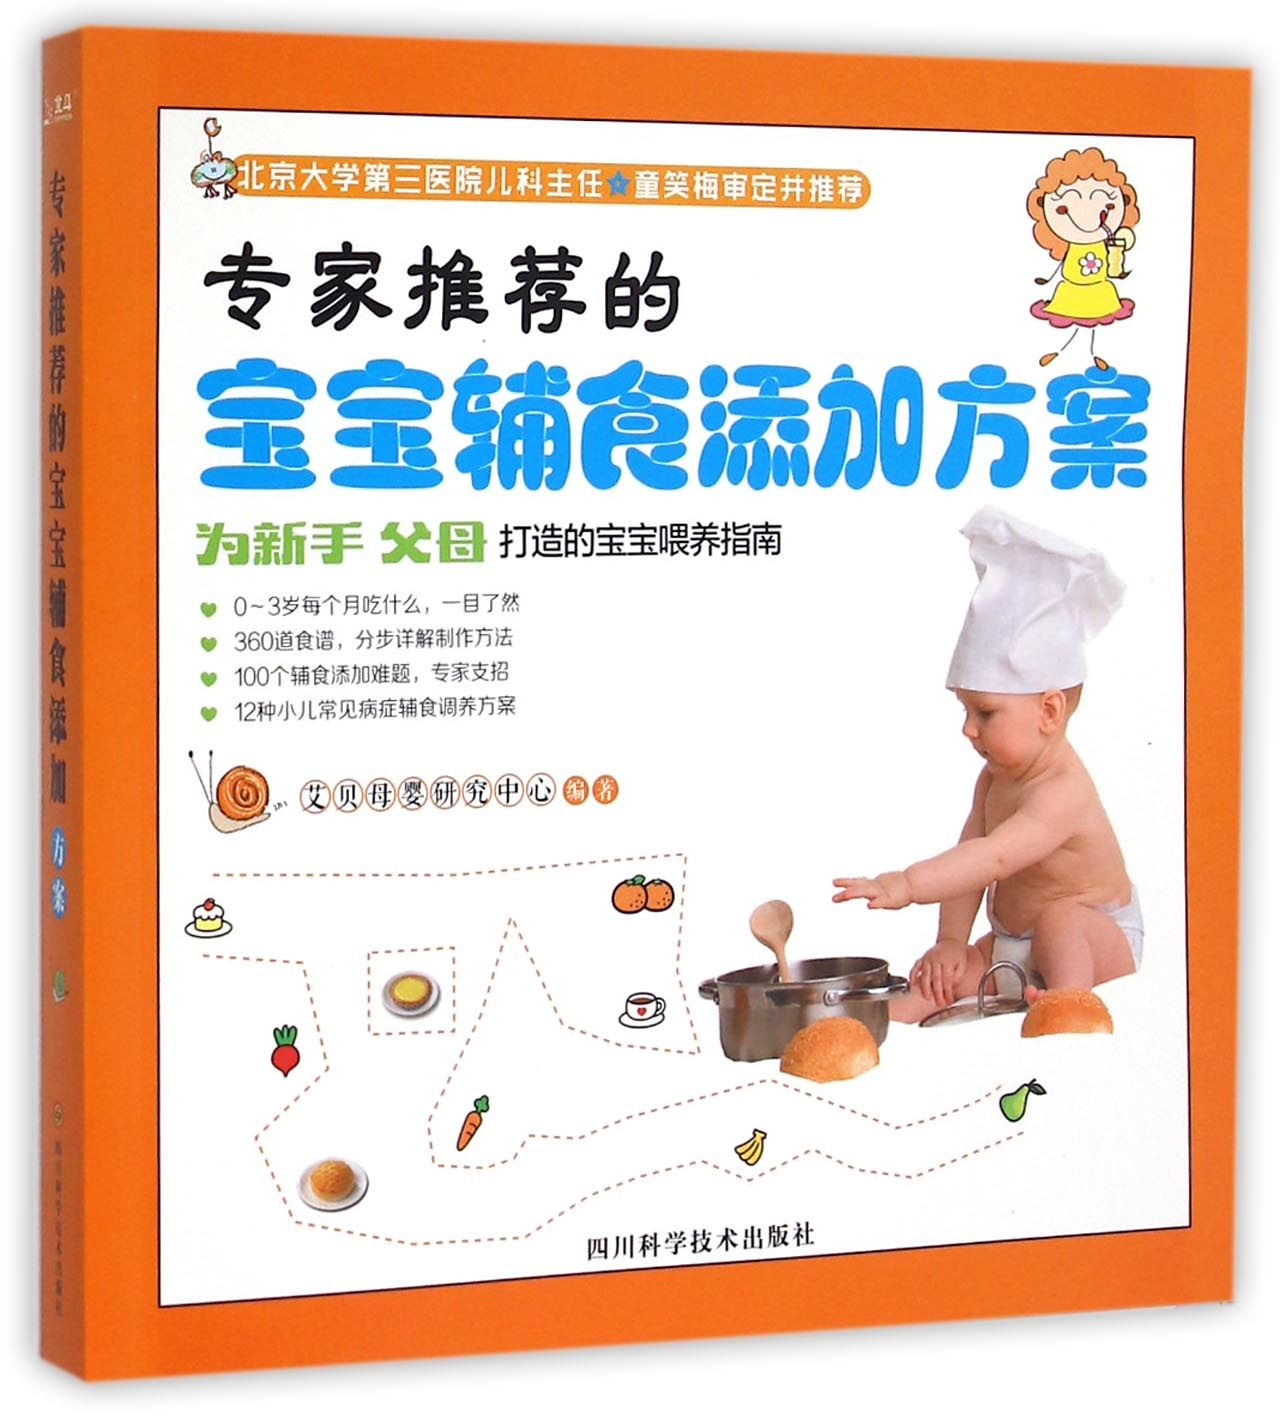 正版图书的宝宝辅食添加方案爱贝母婴研究中心四川科学技术出版社9787536480698